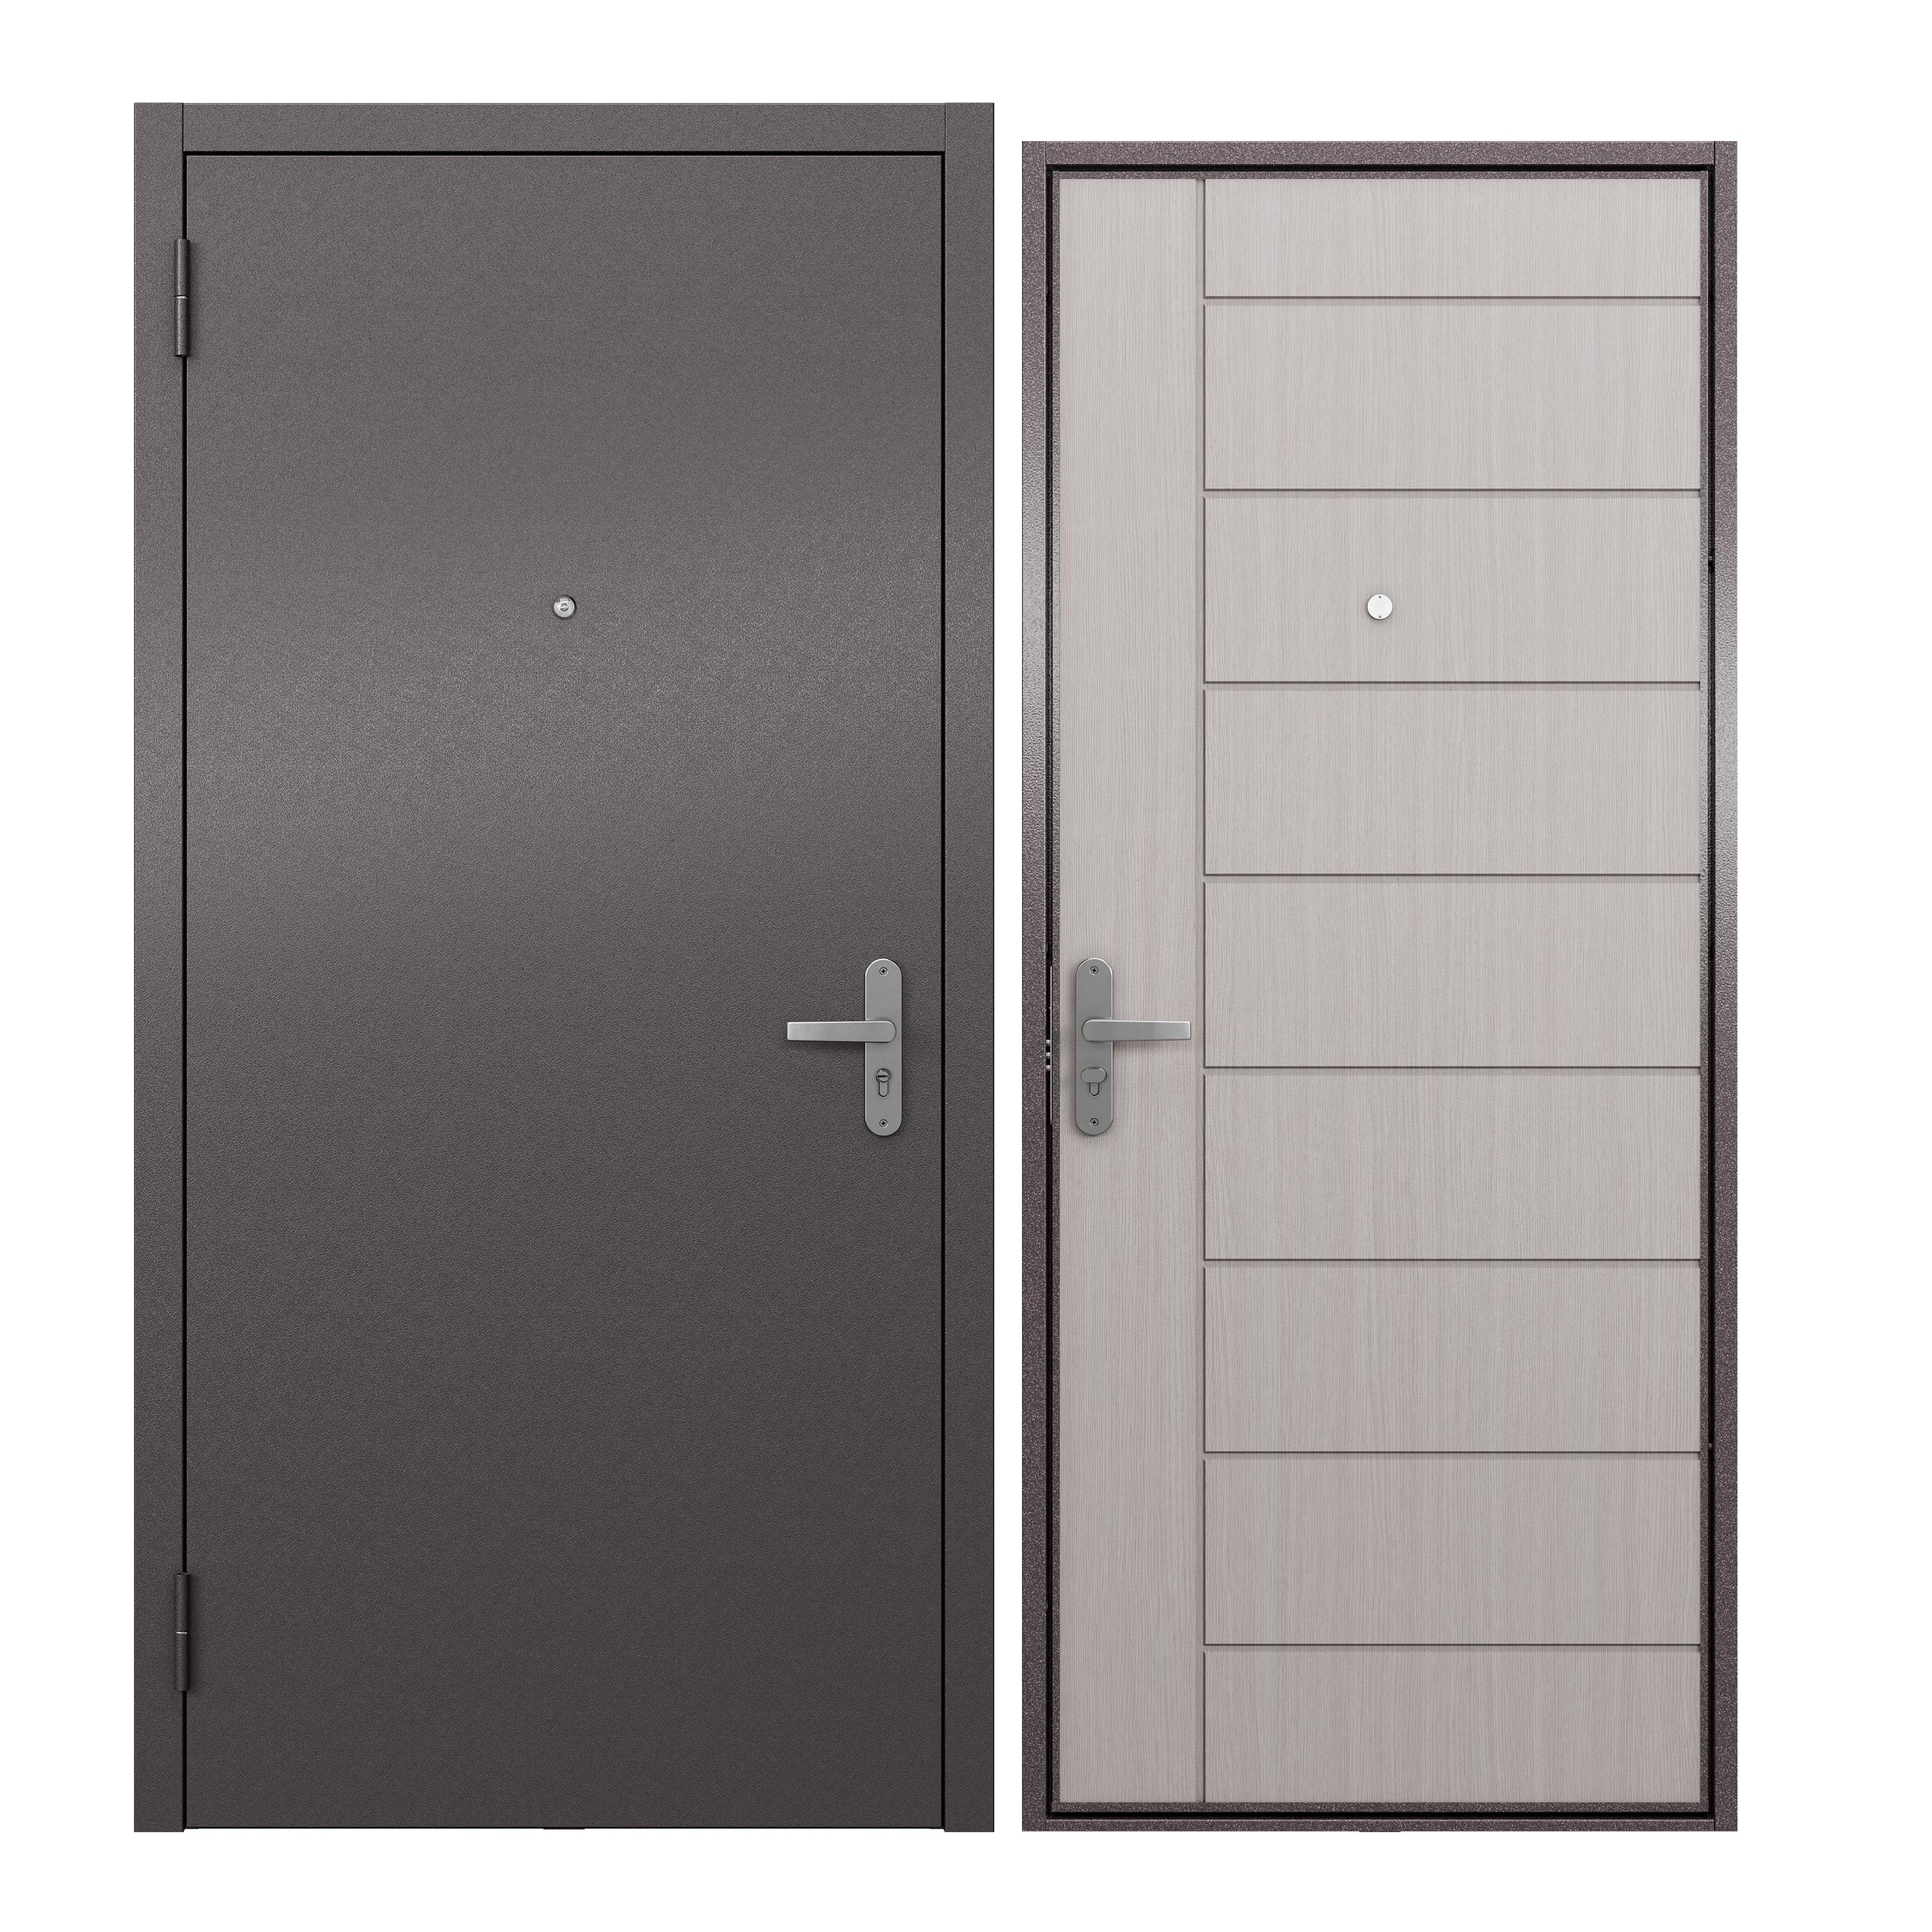 Дверь входная для квартиры ProLine металлическая Terminal A 860х2050, левая, белый дверь входная buldoors ютта левая букле шоколад ларче бьянко с зеркалом 860х2050 мм